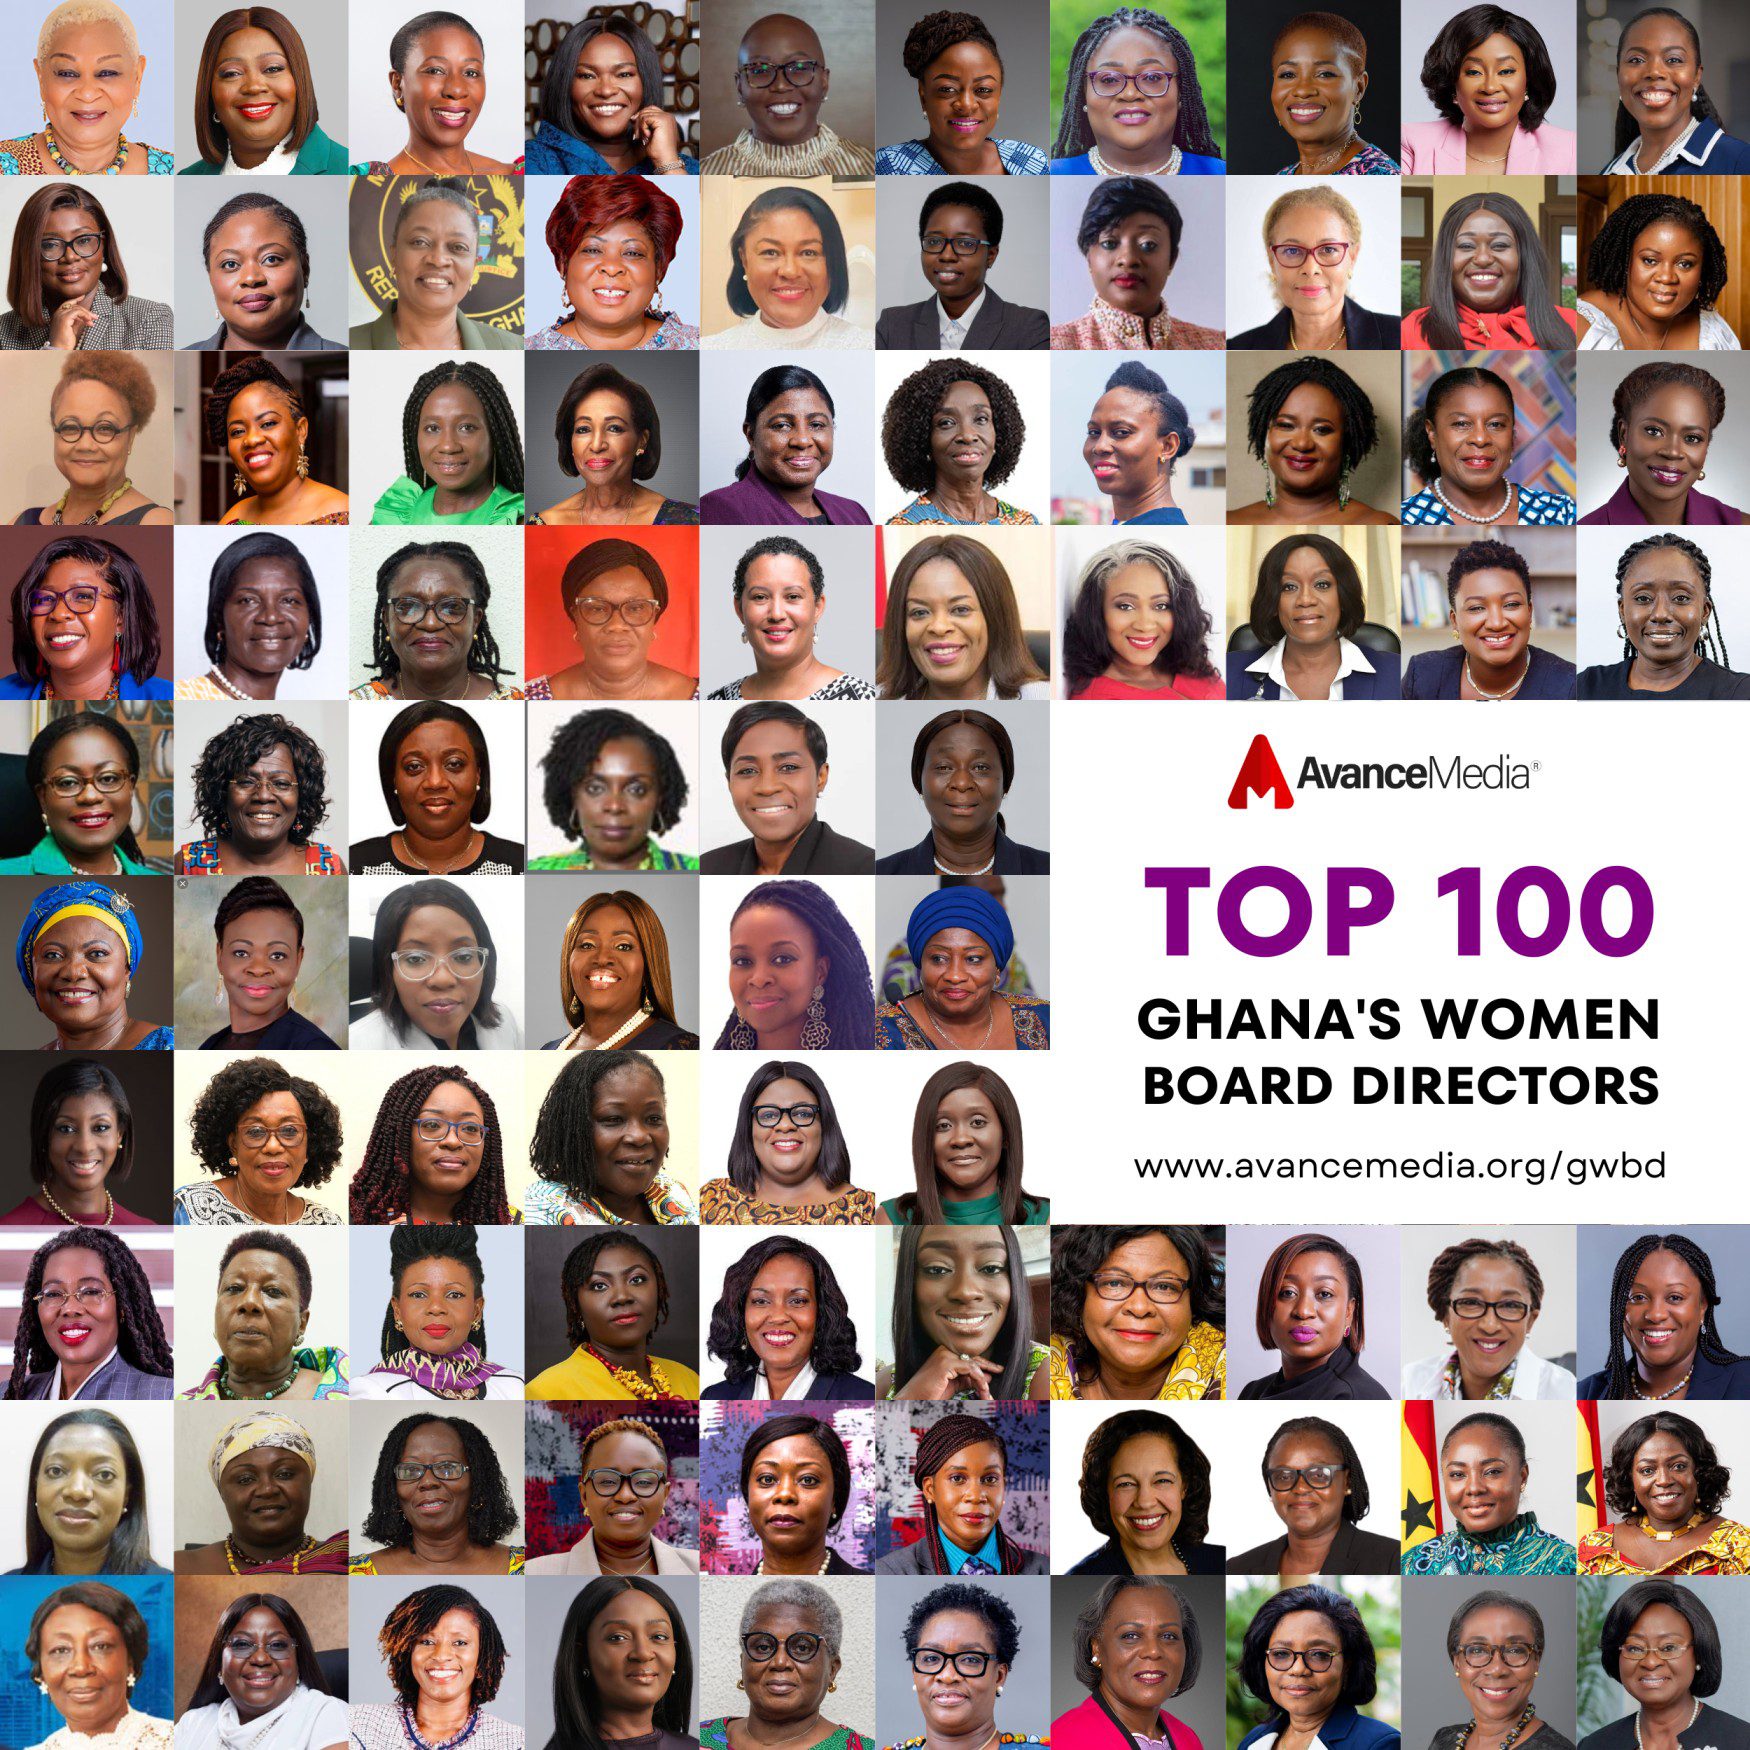 Top 100 Ghana's Women Board Directors